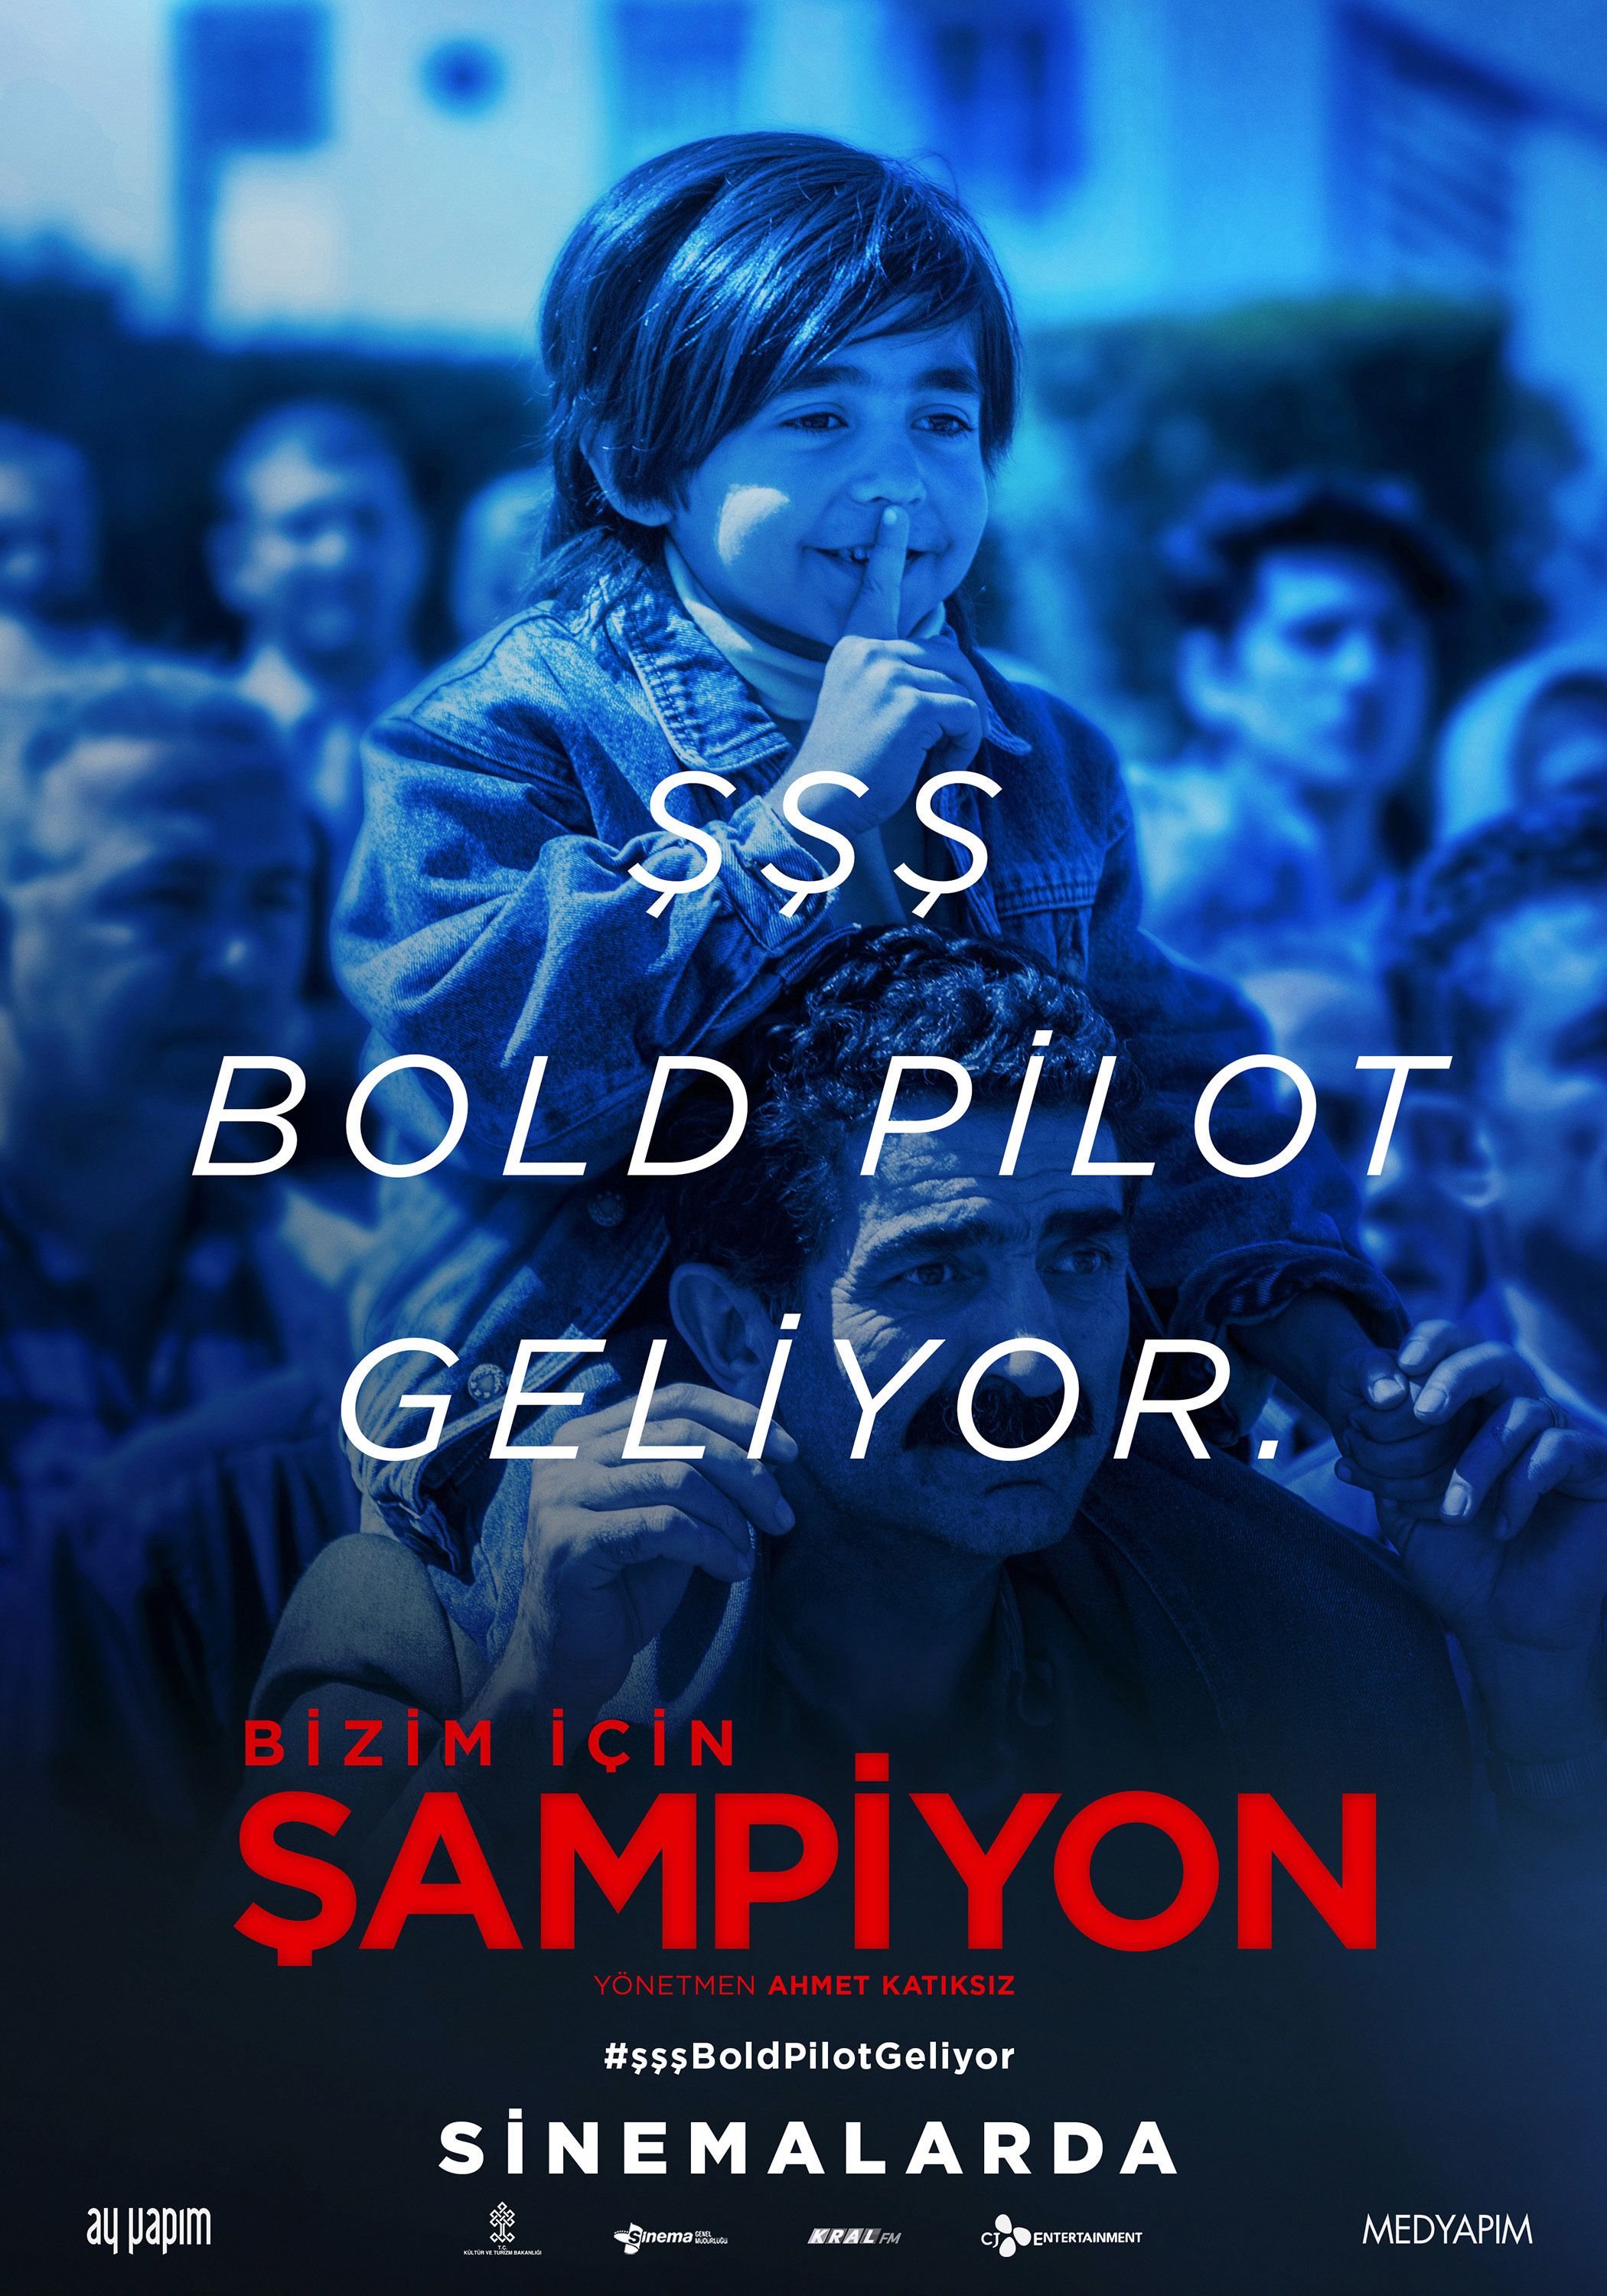 Sampiyon (2018) Poster #3